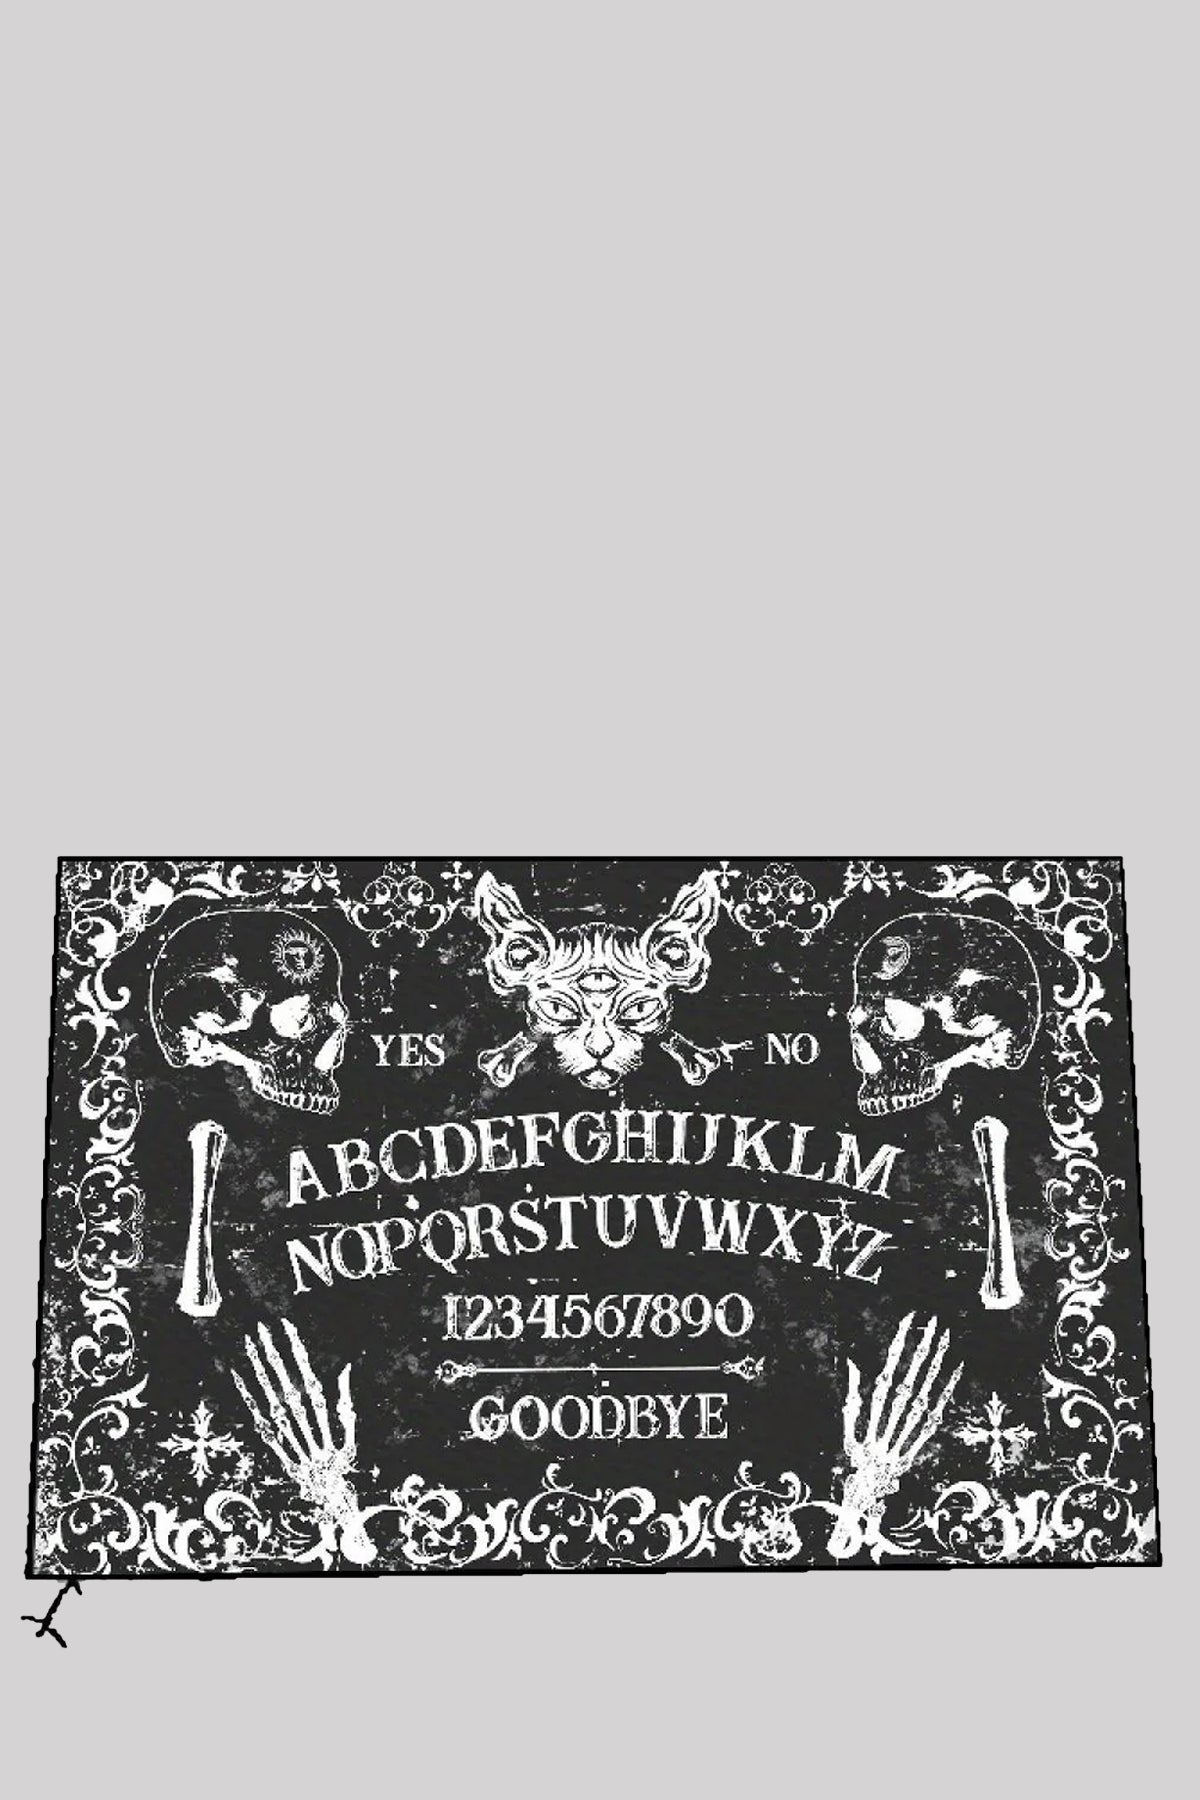 Gothic Hello Goodbye Ouija Rug Halloween Non-Slip Décor